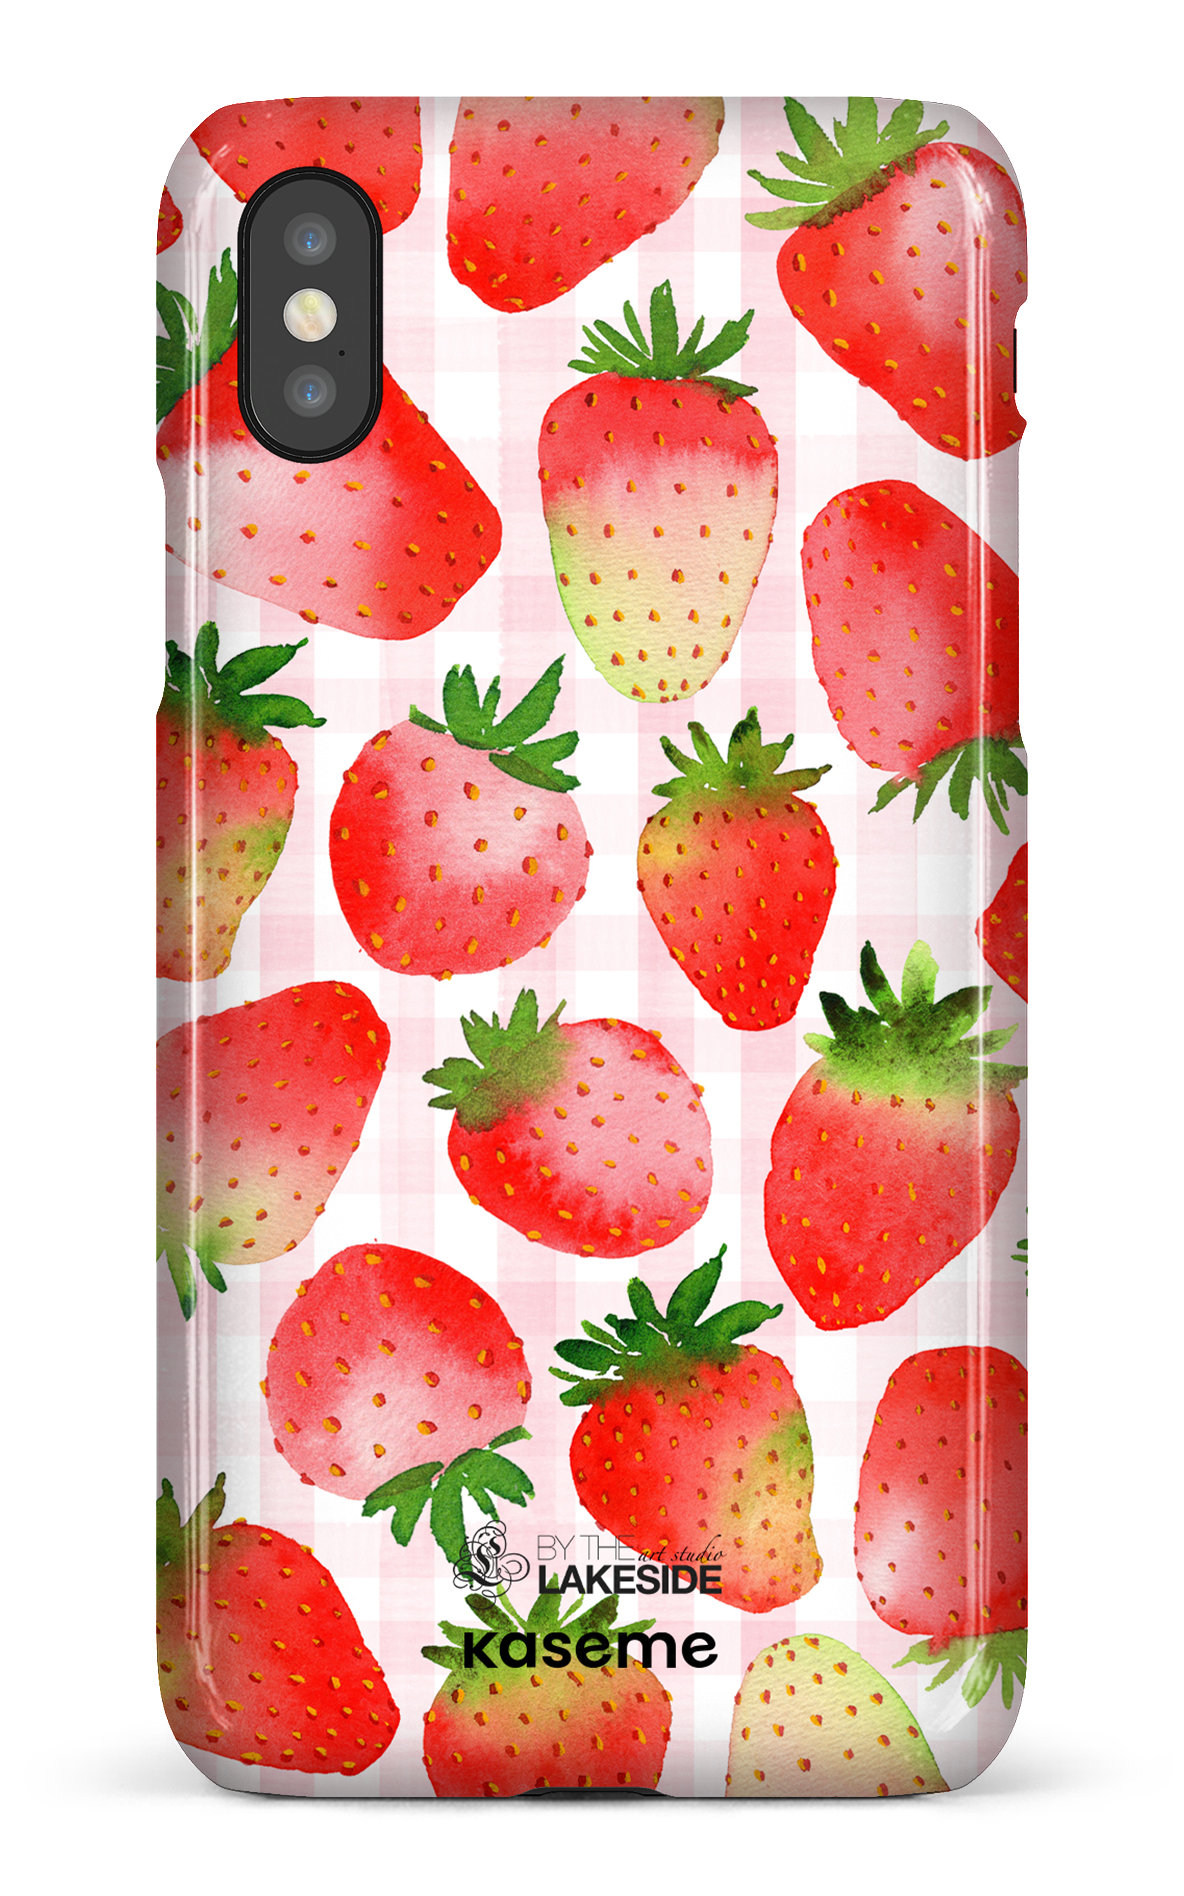 Strawberry Fields by Pooja Umrani - iPhone X/Xs